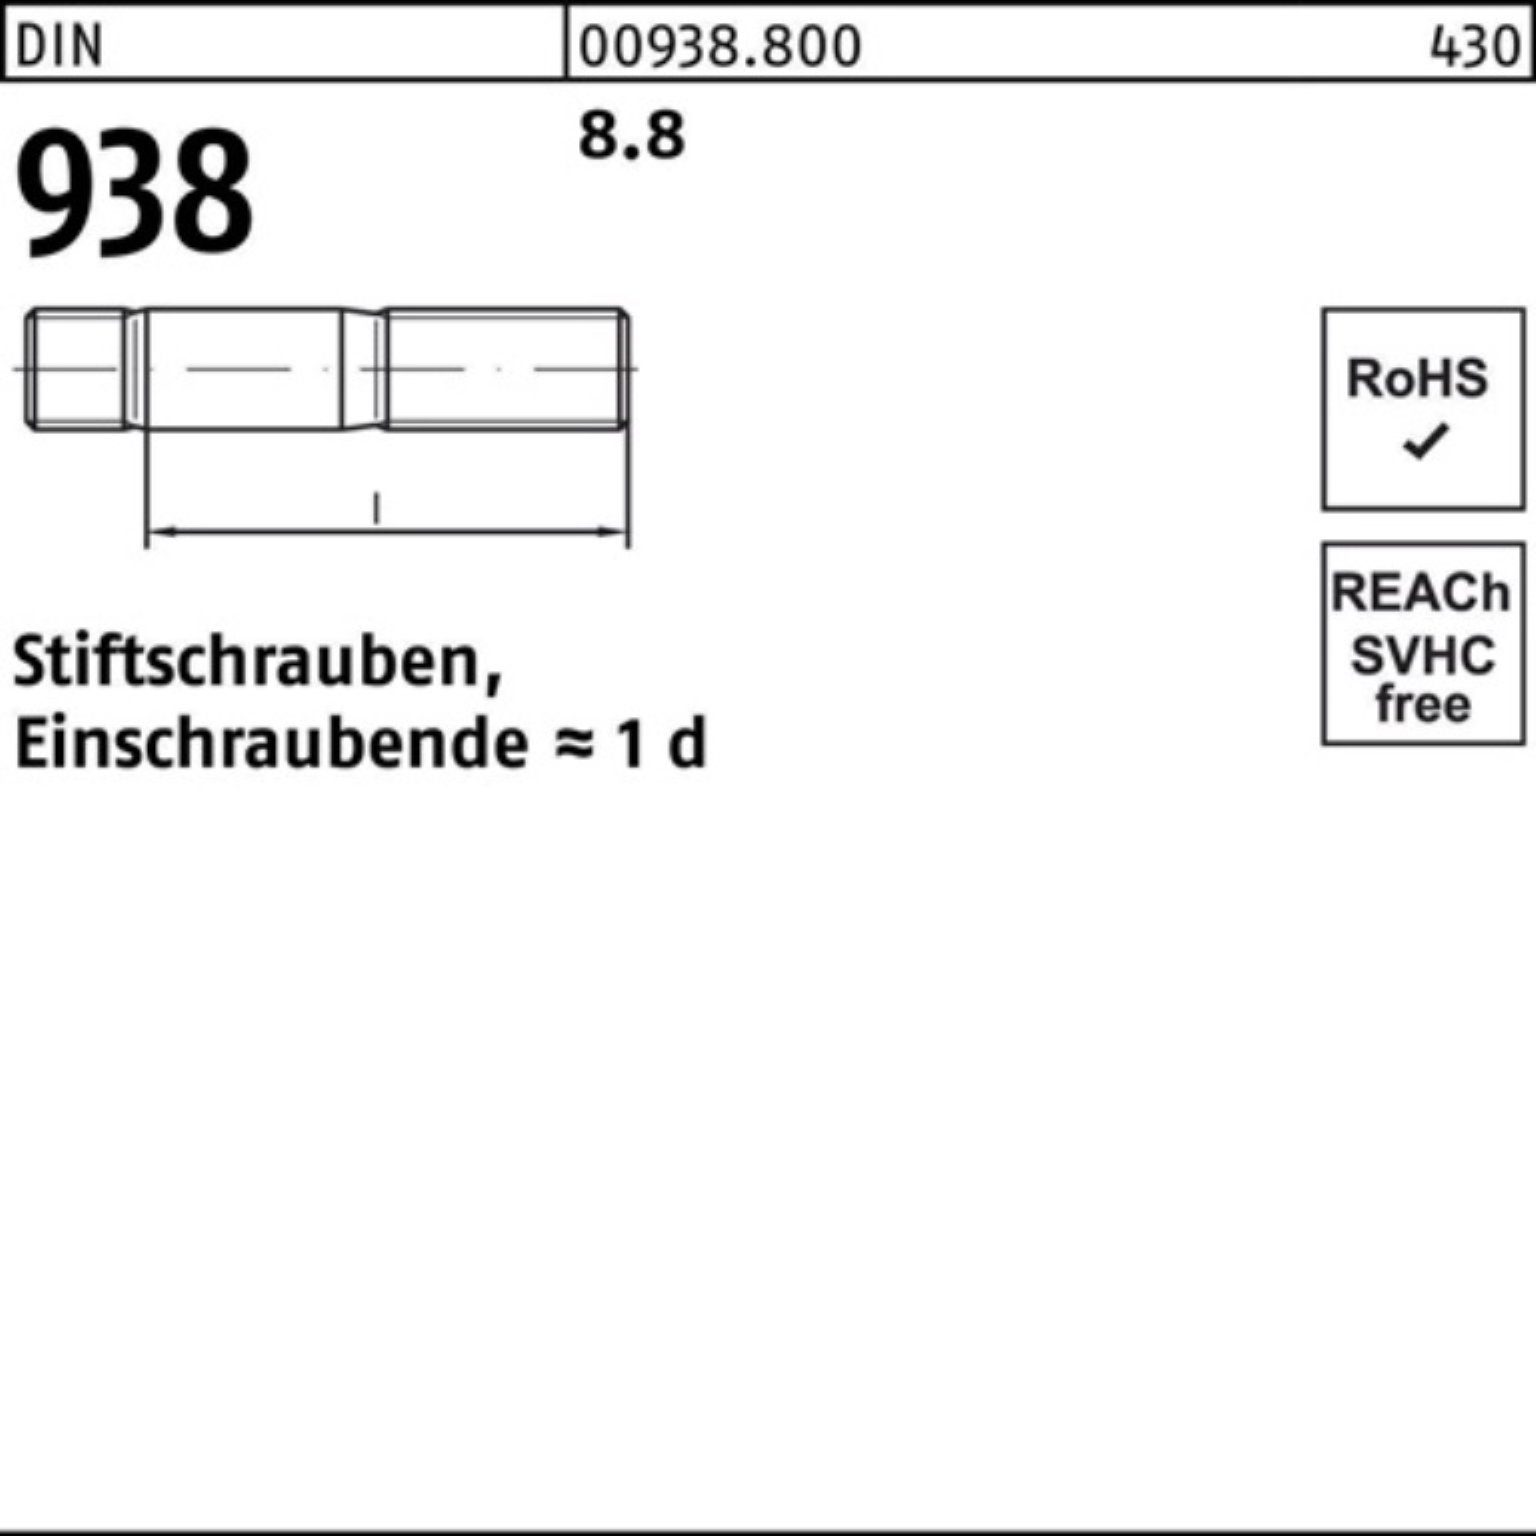 Reyher Stiftschraube 100er Pack Stiftschraube 25 45 M16x DIN Sti 938 8.8 938 8.8 Stück DIN